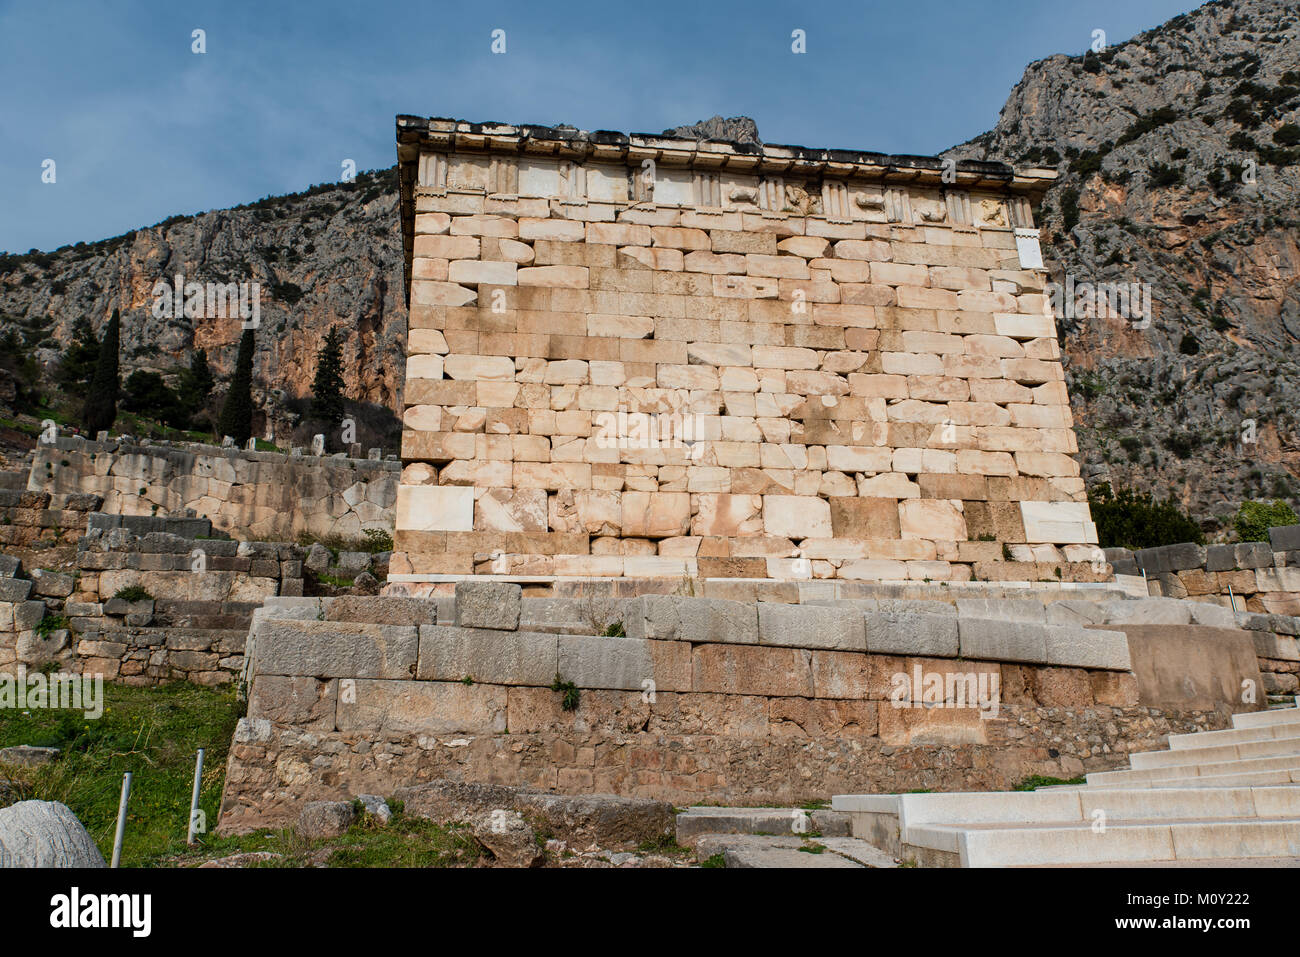 Die Athener Finanzministerium in Delphi, eine archäologische Stätte in Griechenland, am Mount Parnassus. Stockfoto